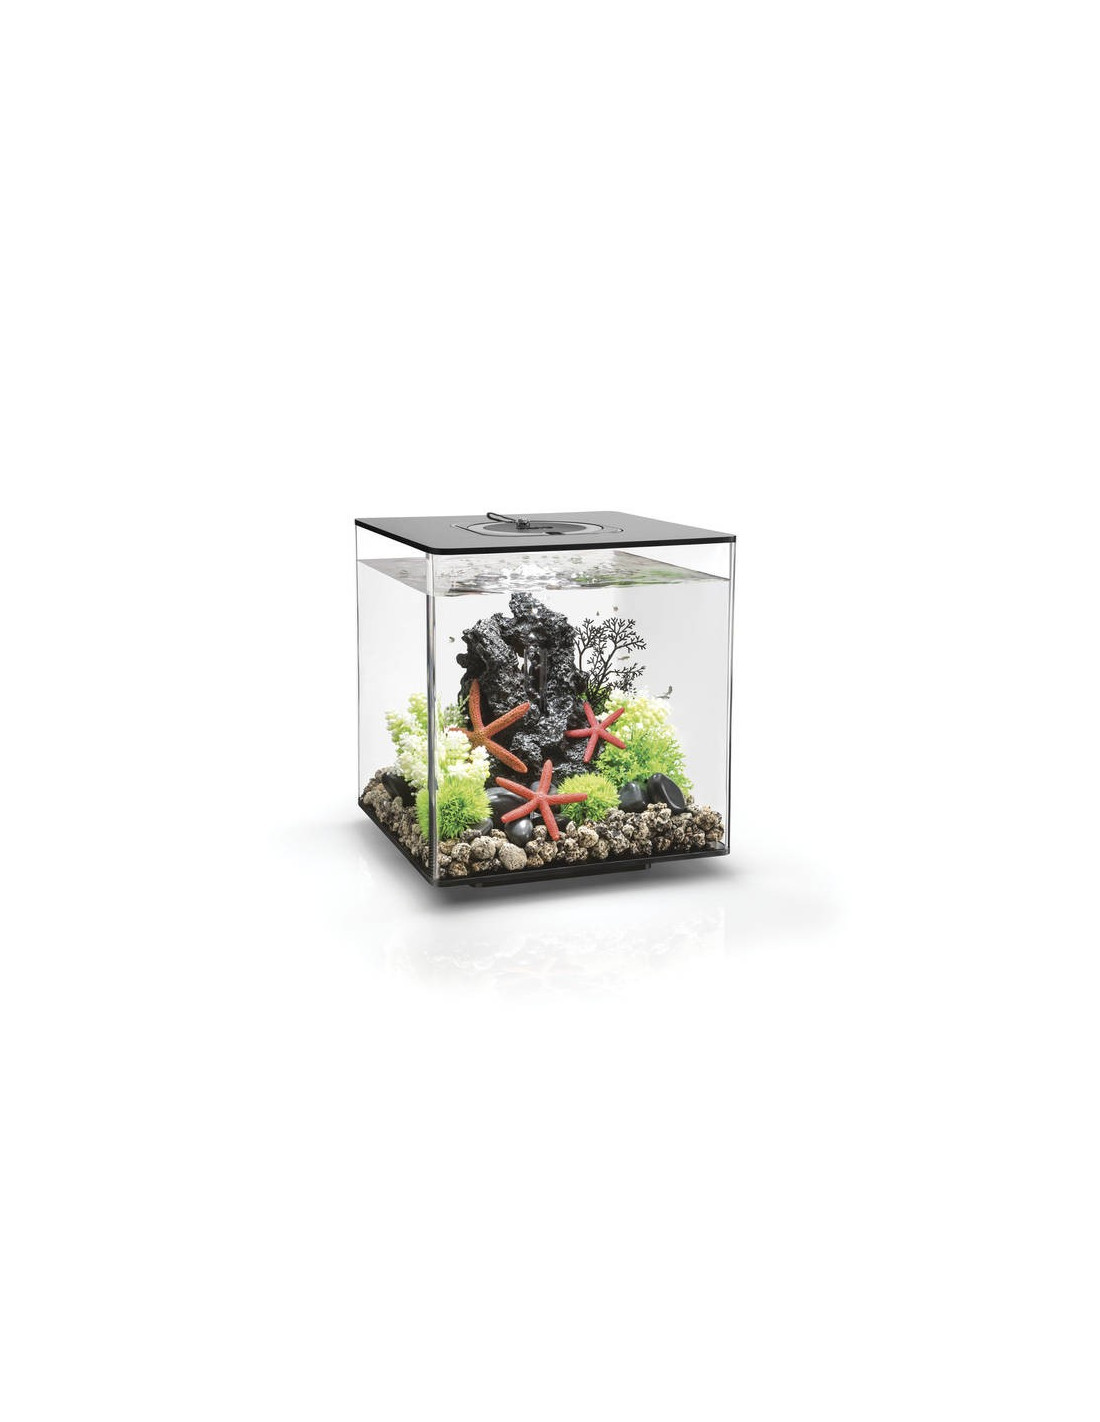 Aquarium biOrb Cube 30 MCR  noir